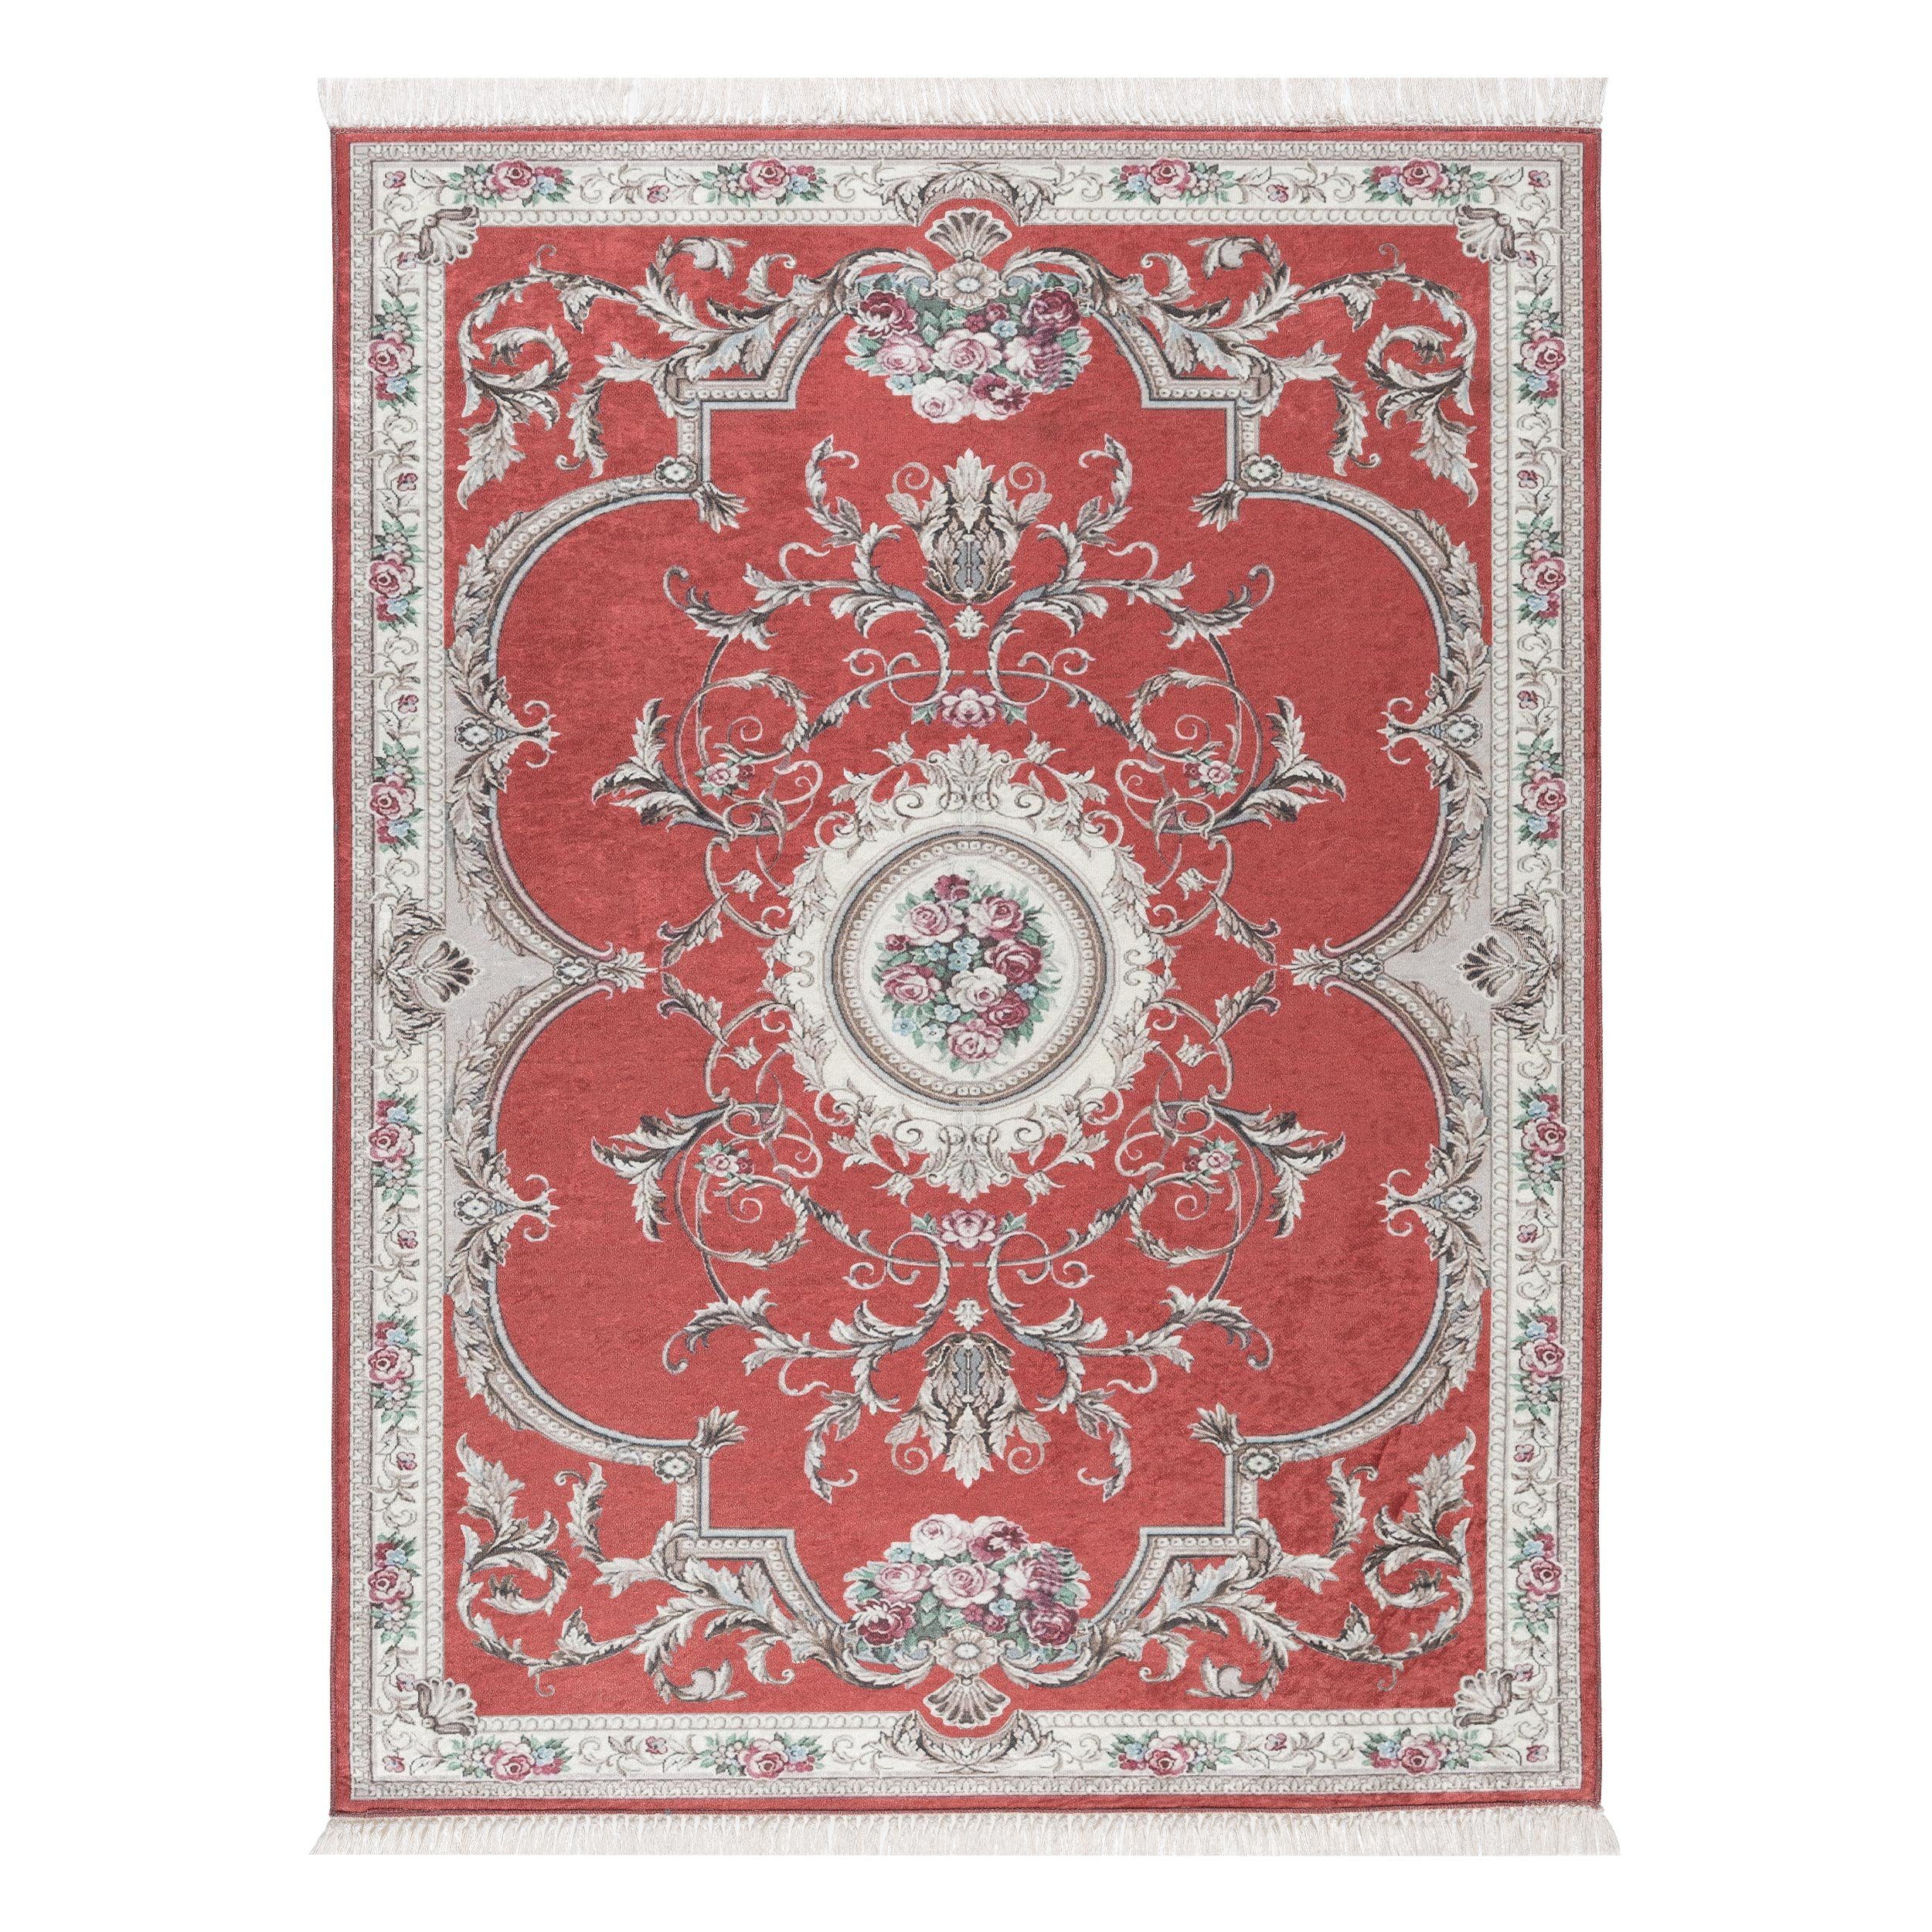 Teppich Teppich classic Design, rot floral, Sehrazat, Rechteckig, Höhe: 3 mm, mit Medaillon, mit Fransen, floral, klassisch, mit Bordüre, glänzende Oberfläche, sehr schön